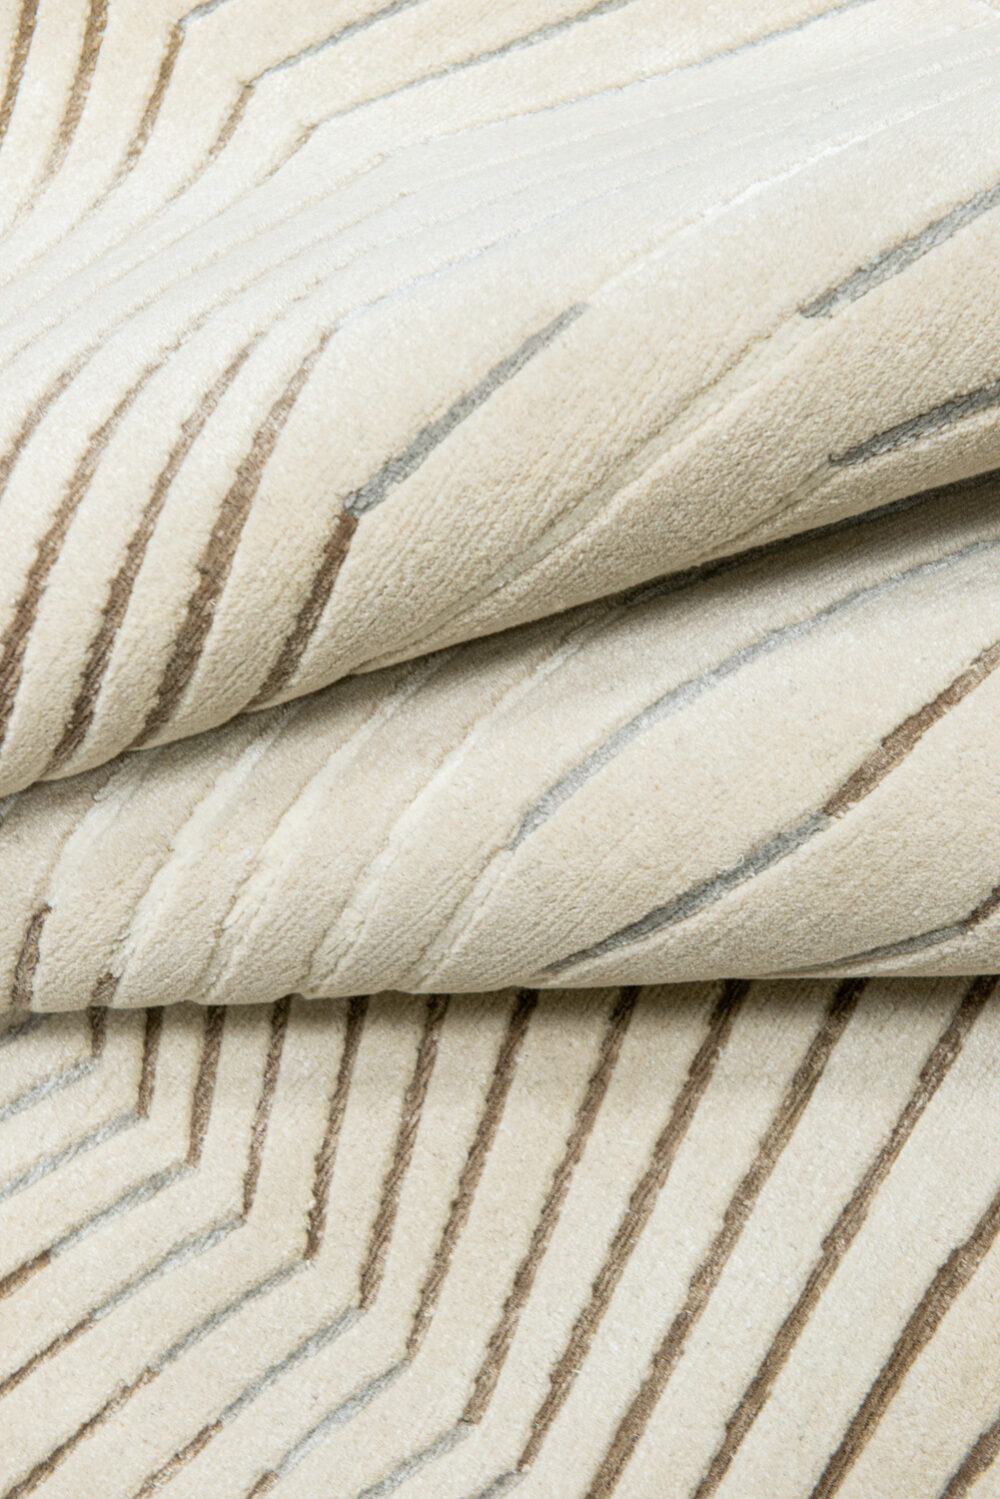 Diseño de lujo y alfombras de alta gama hechas a medida • CANY